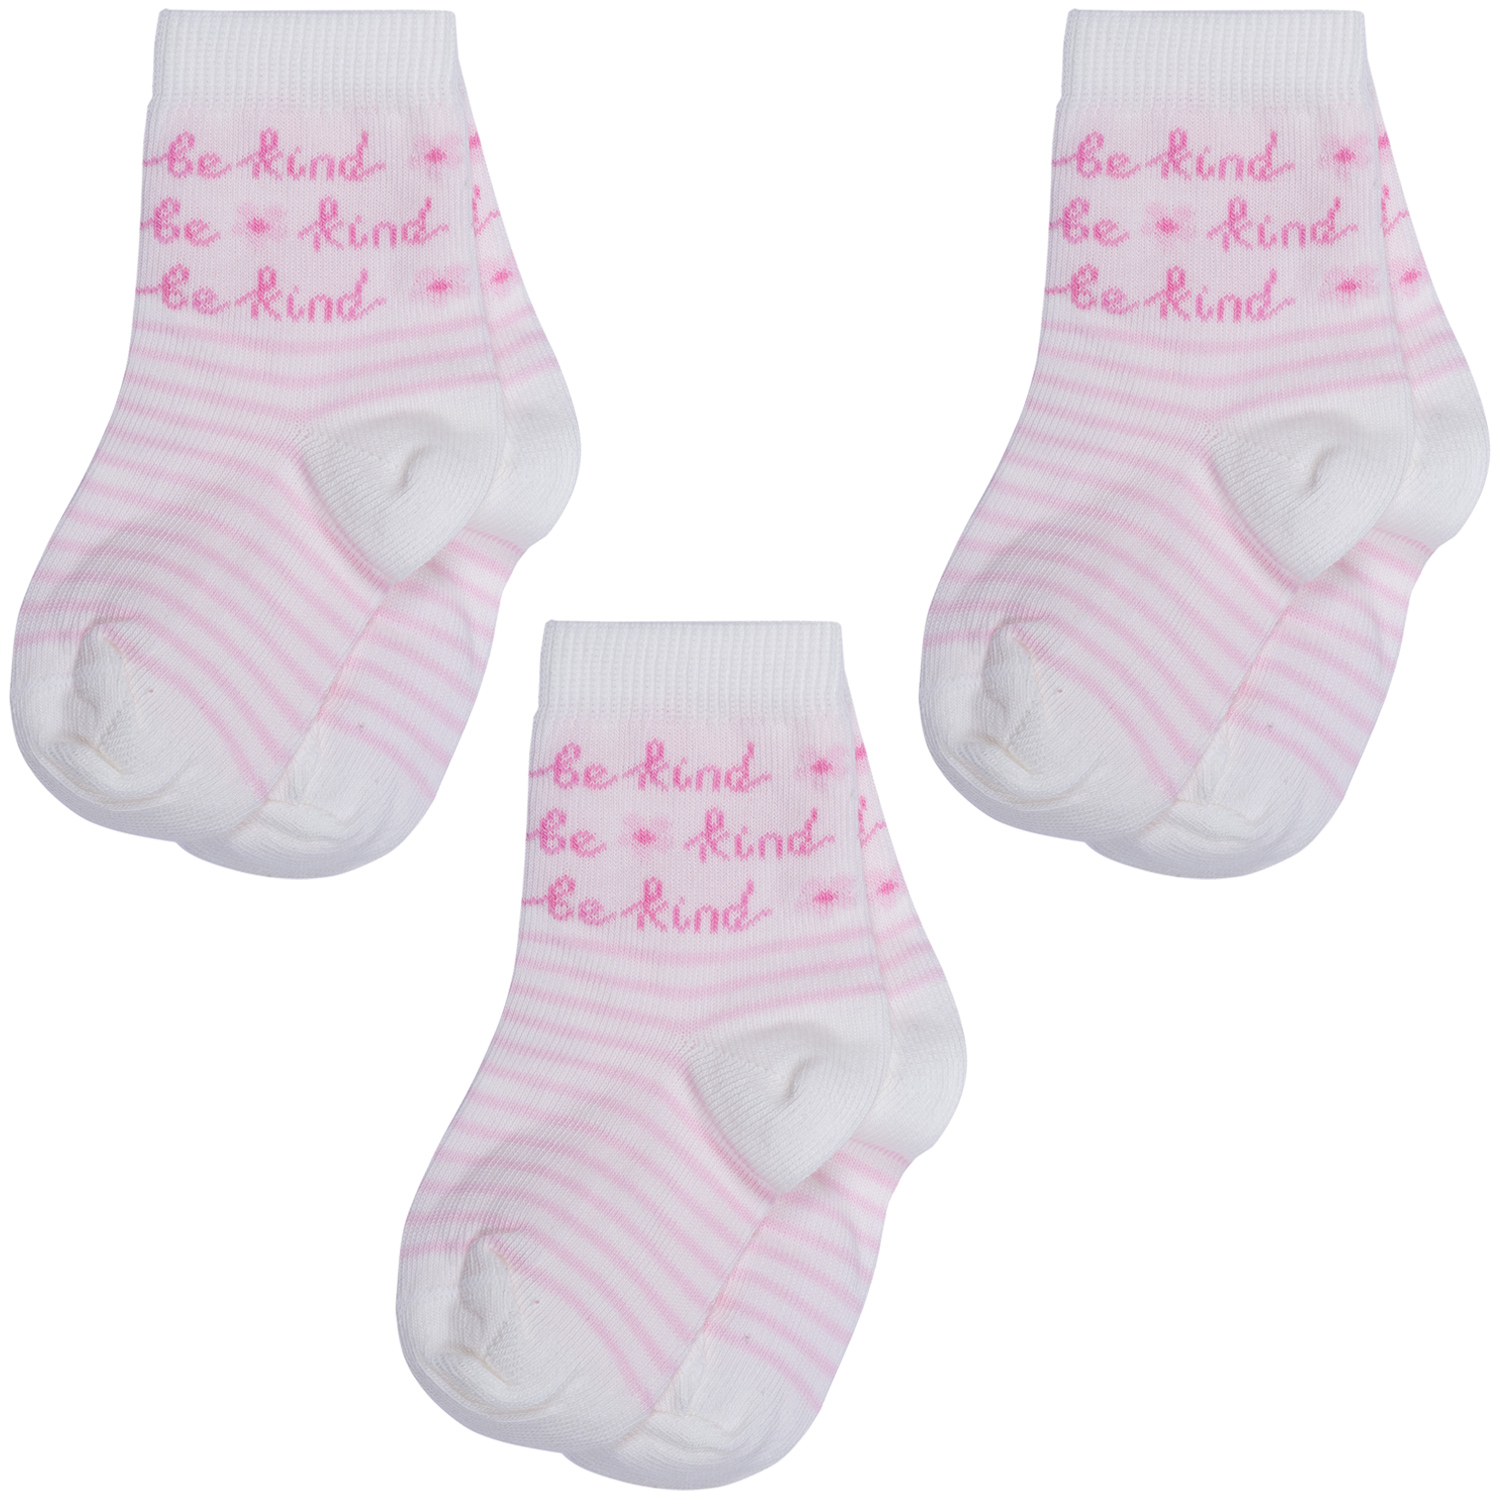 Носки для девочек Rusocks 3-Д3-13793_12-14_крем цв. розовый; белый р. 20-22